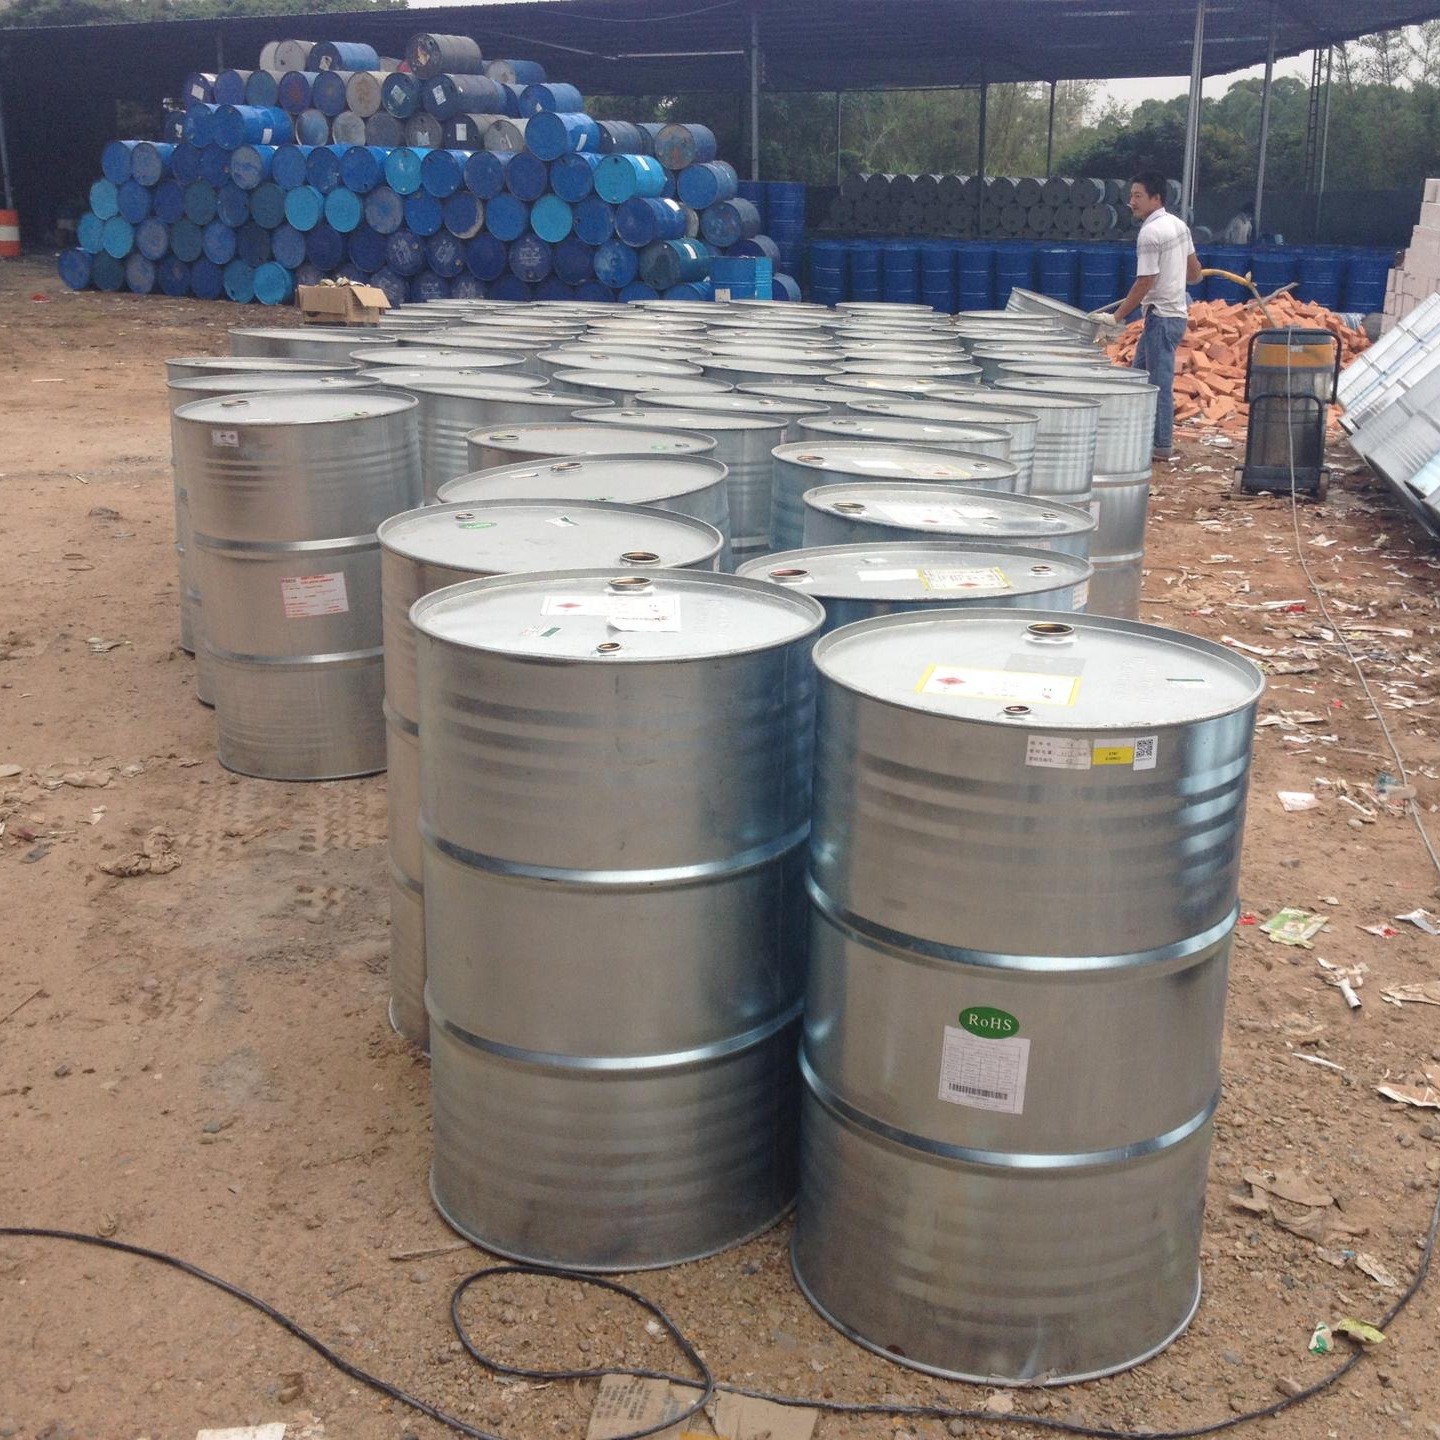 莞兴供应东莞二手化工桶,200l二手铁桶厂家,二手化工桶回收